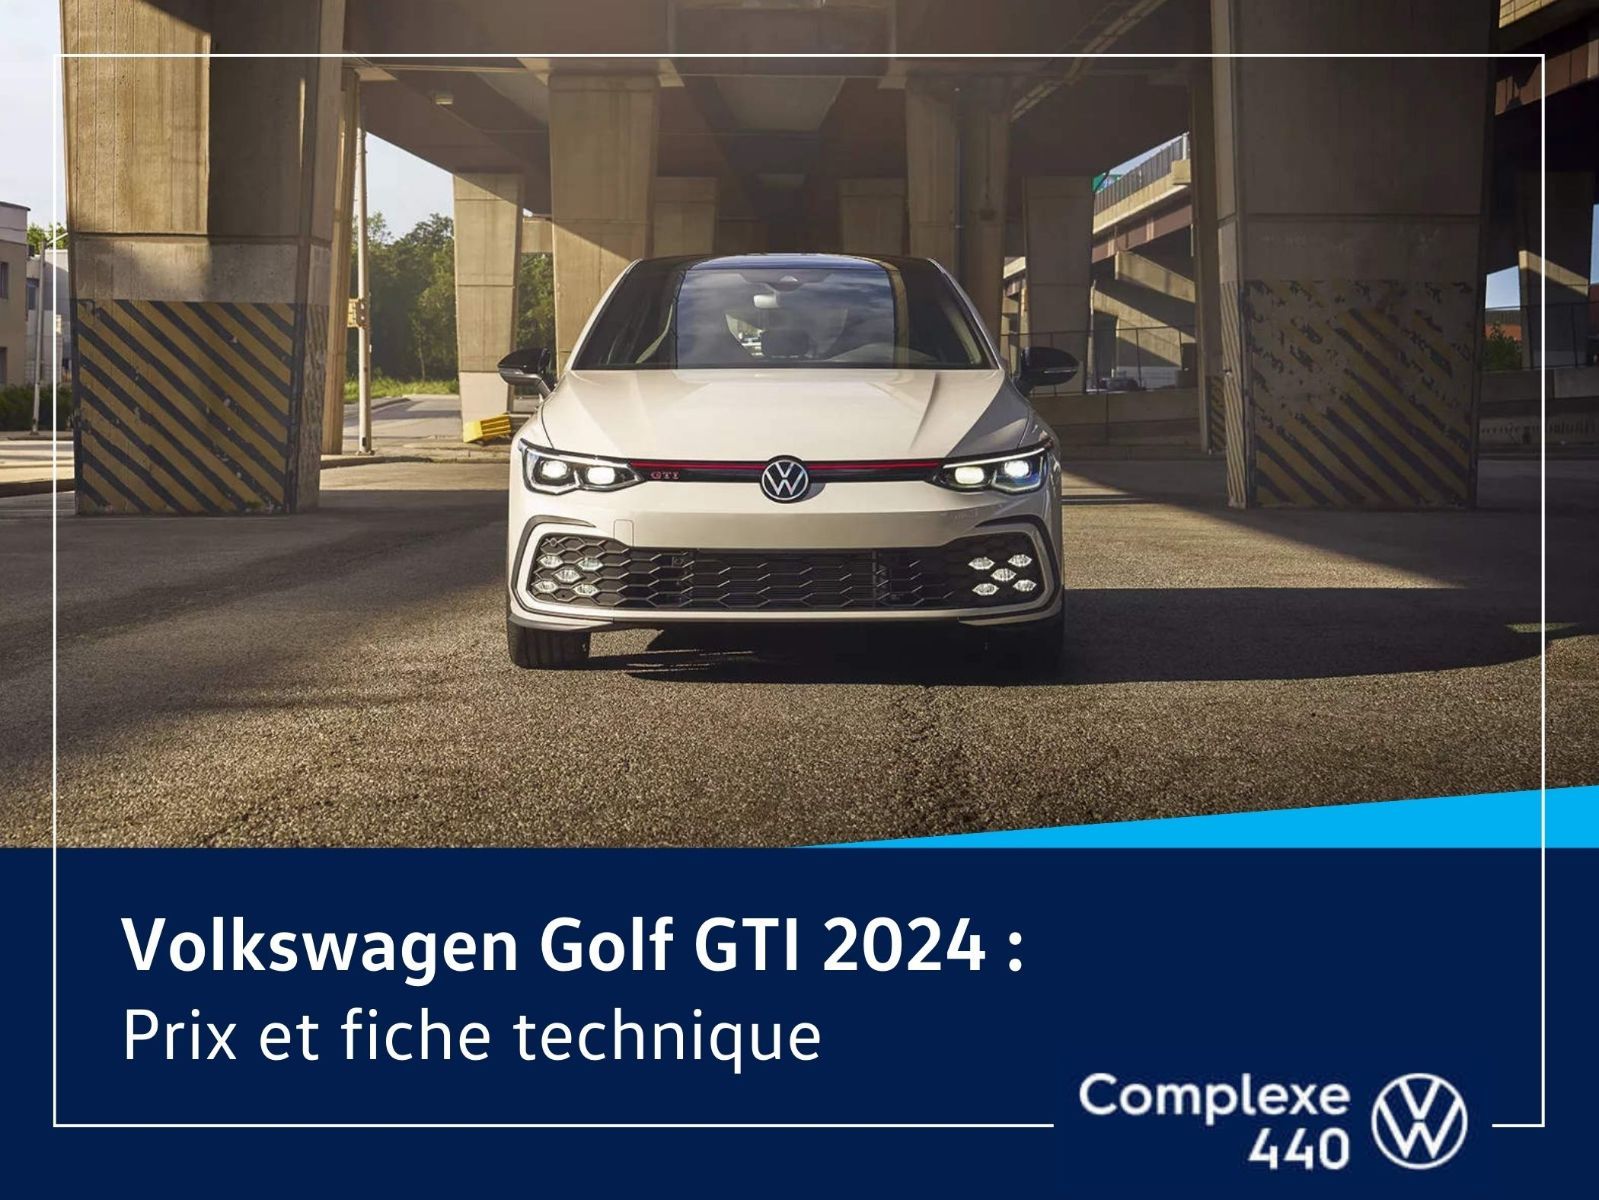 image entête - Golf GTI 2024 Prix et fiche technique